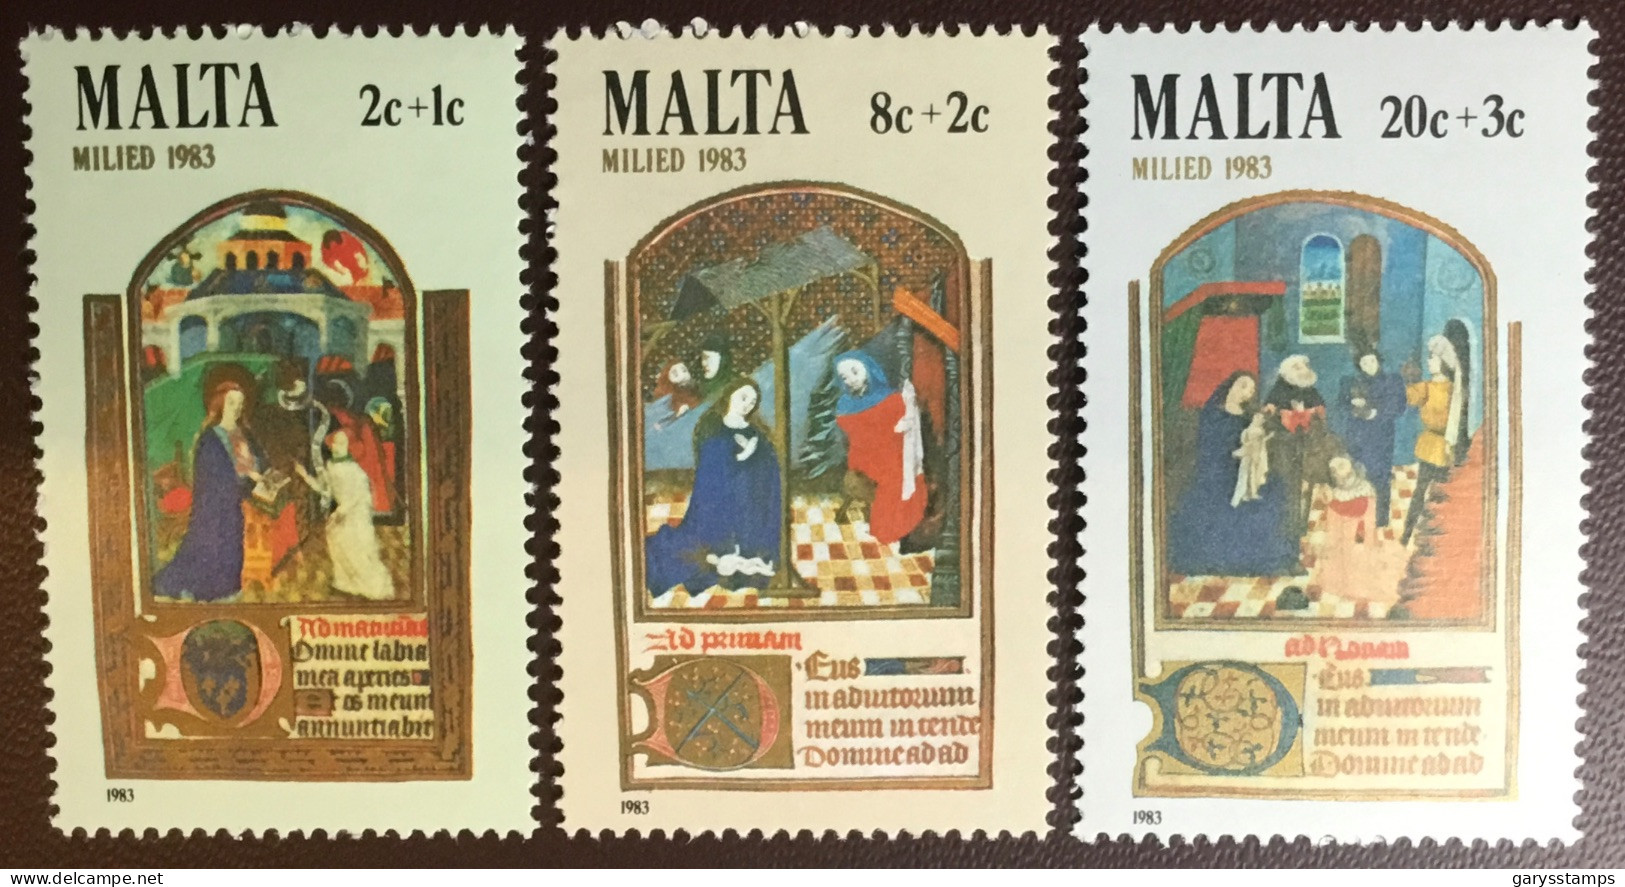 Malta 1983 Christmas MNH - Malte